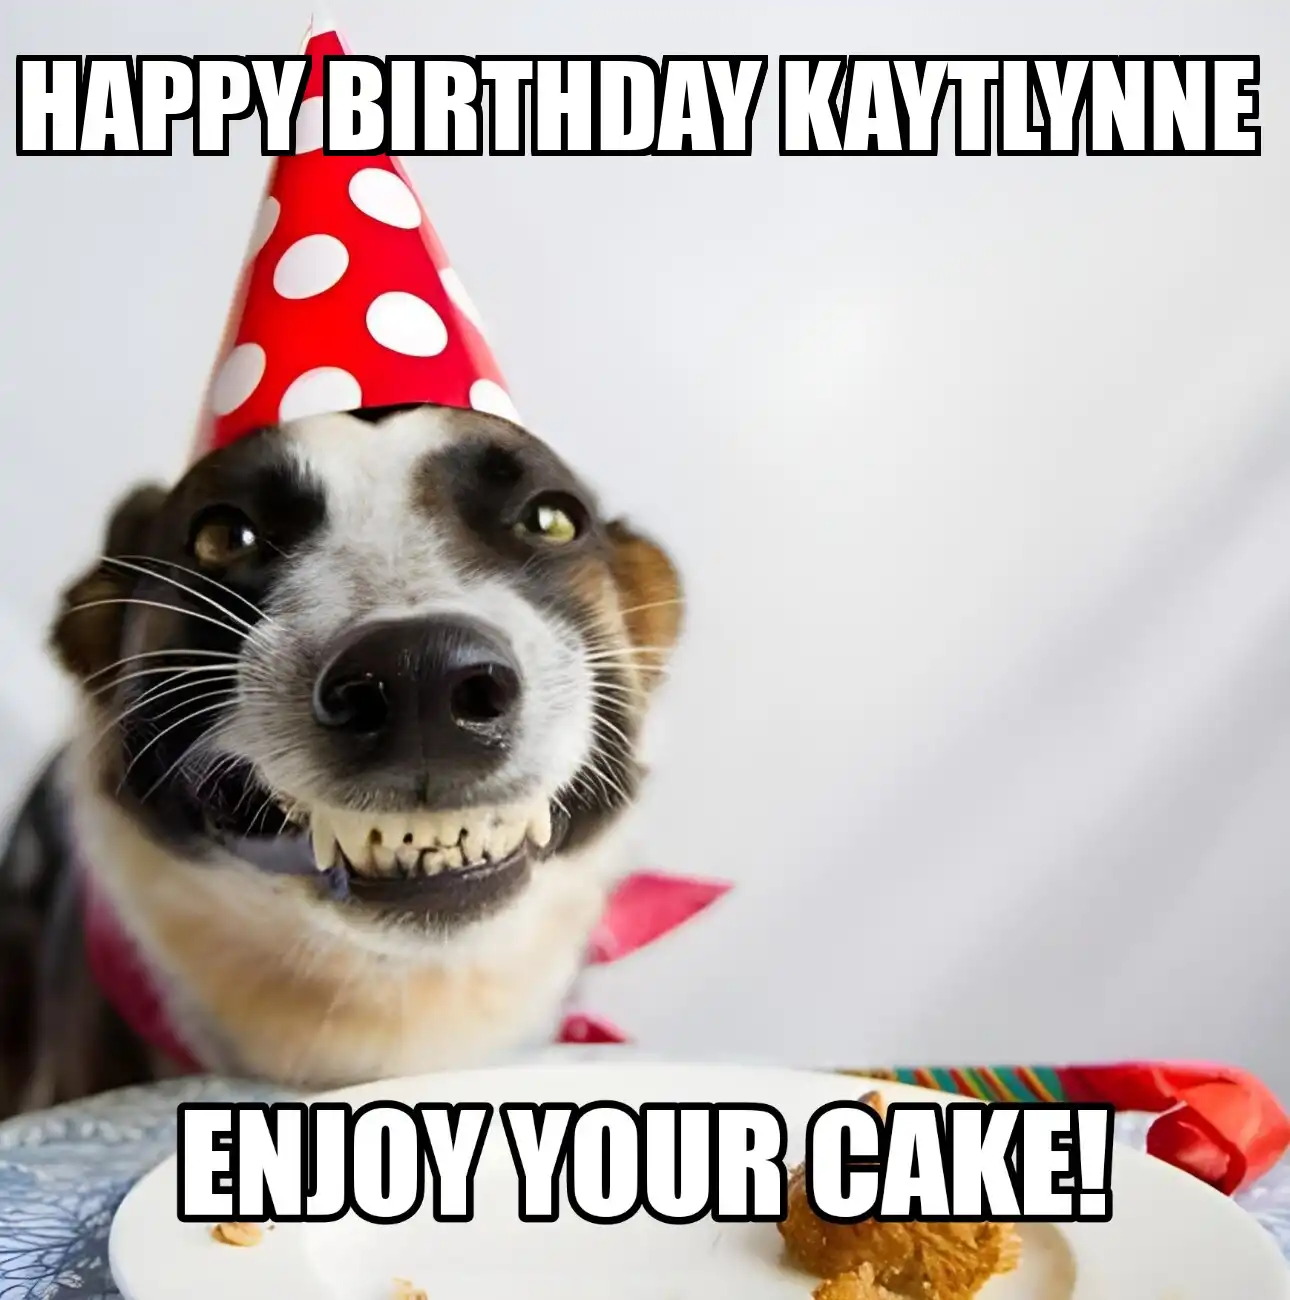 Happy Birthday Kaytlynne Enjoy Your Cake Dog Meme